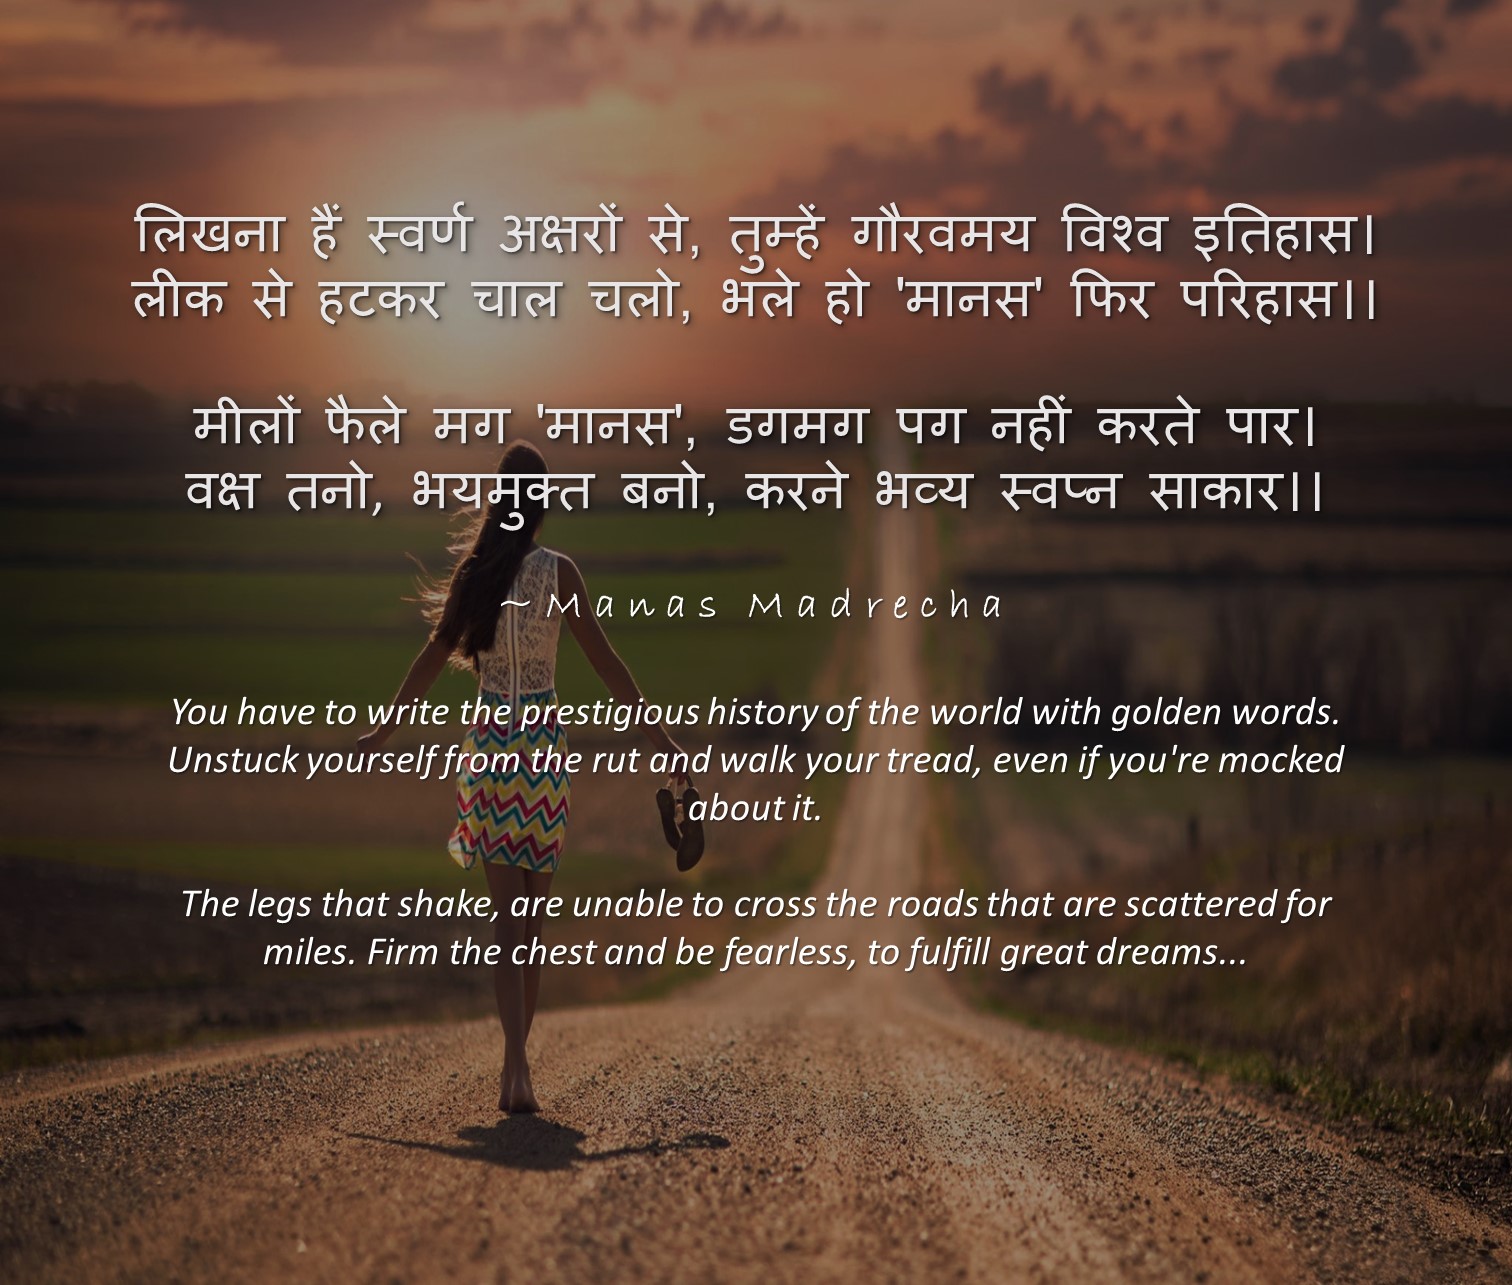 To Fulfill Great Dreams – Hindi Poem on dreams | Manas Madrecha blog